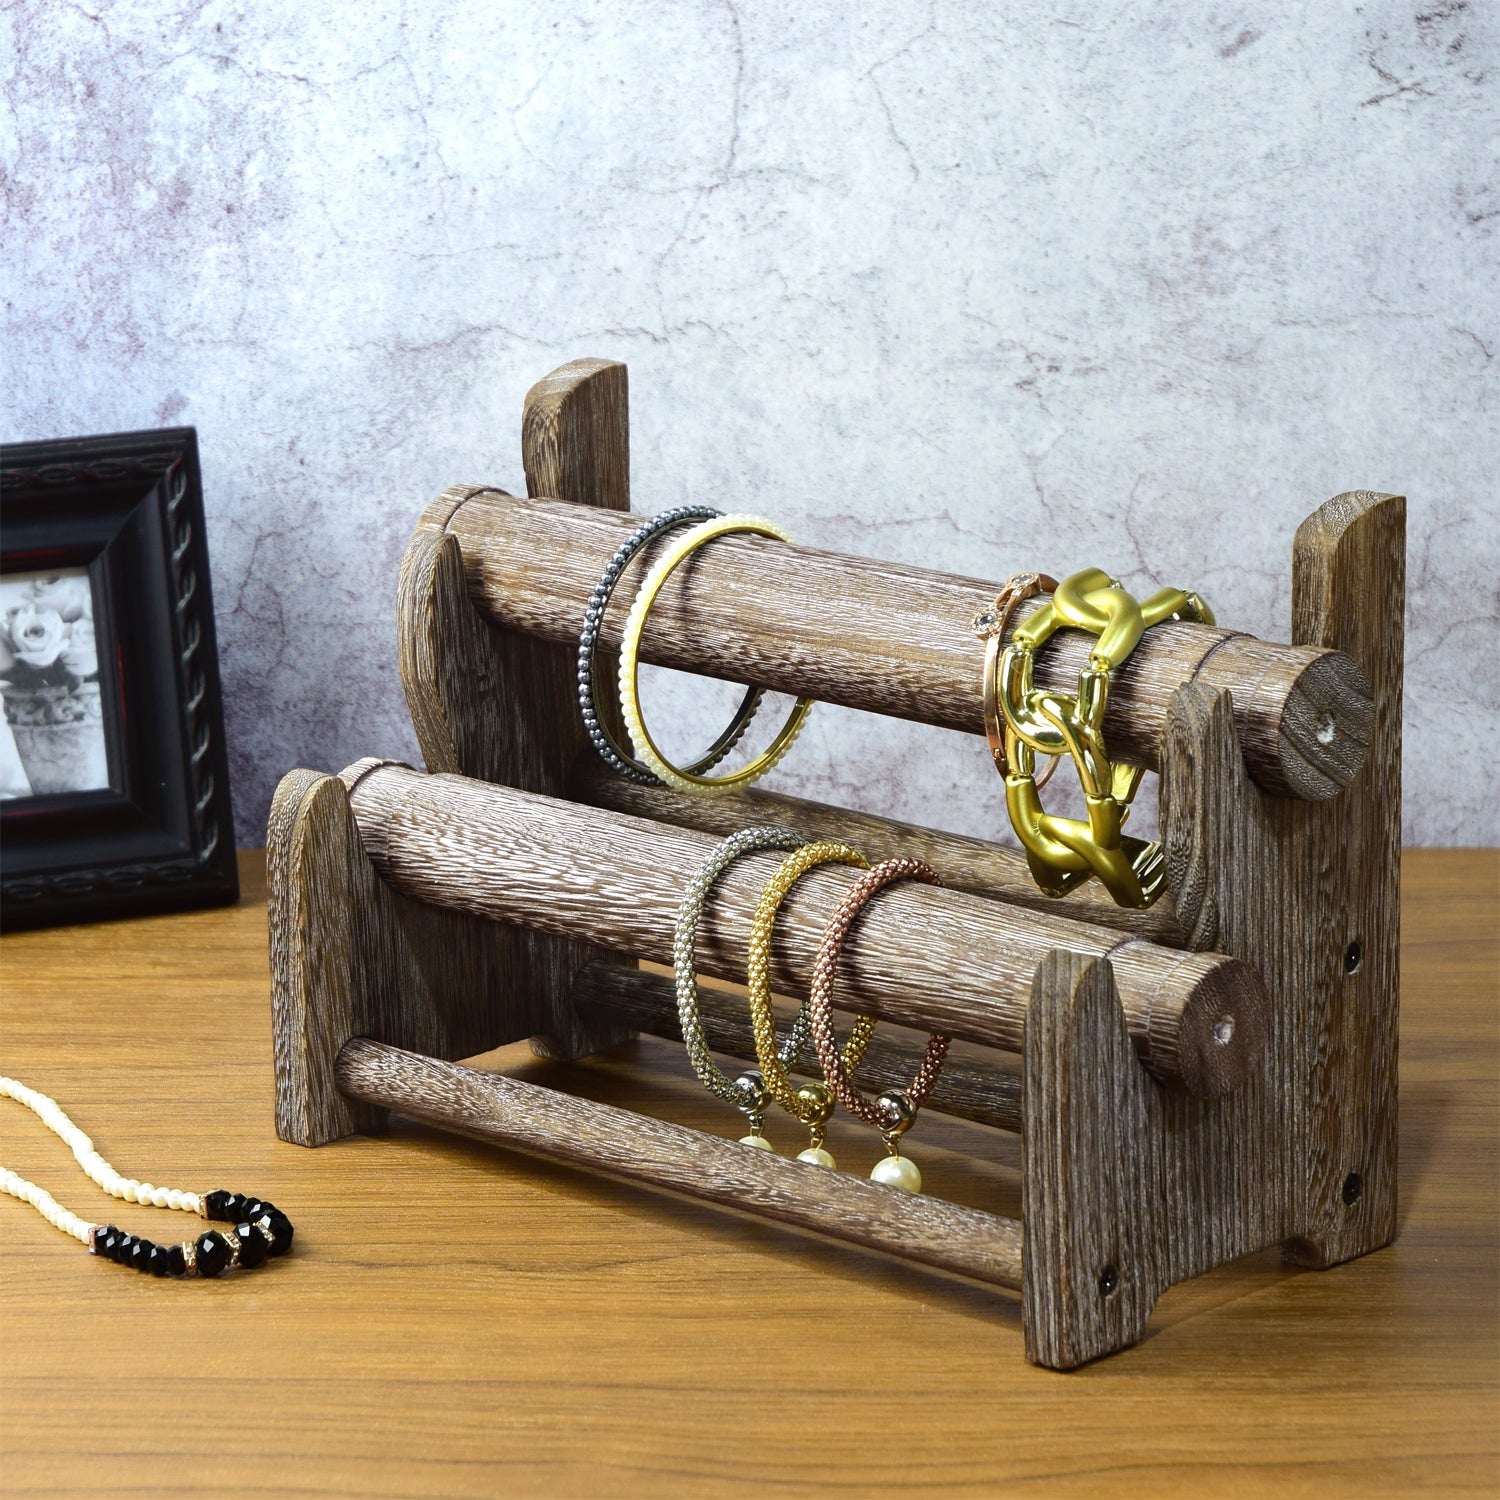 Ikee Design® Antique Wooden 4 Tier Bar Bracelet bangle holder Display